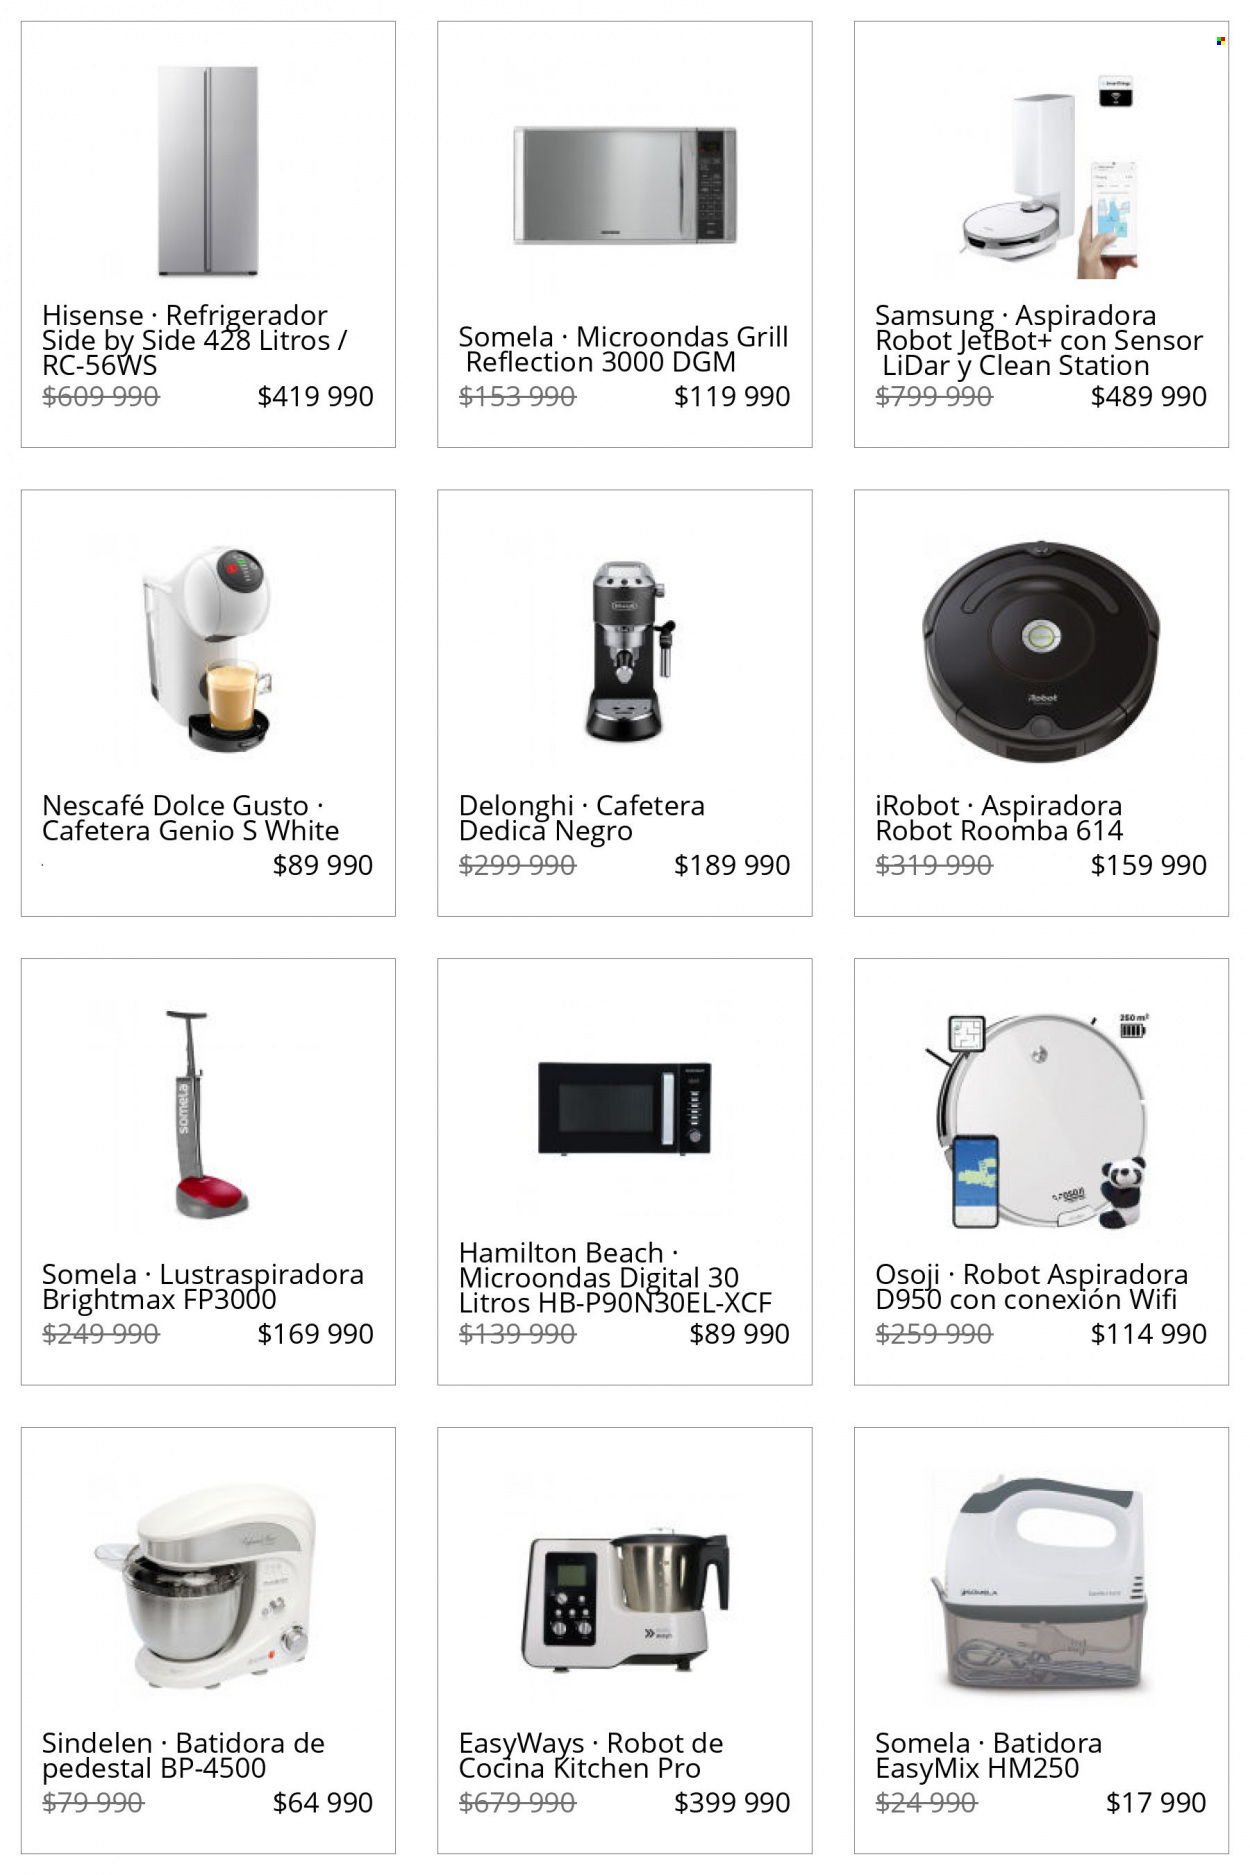 thumbnail - Catálogo Lider - Ventas - Samsung, Dolce Gusto, De'Longhi, robot, Hisense, frigorífico, microondas grill, microondas, cafetera, aspirador, iRobot, robot aspirador, Roomba, batidora, robot de cocina. Página 4.